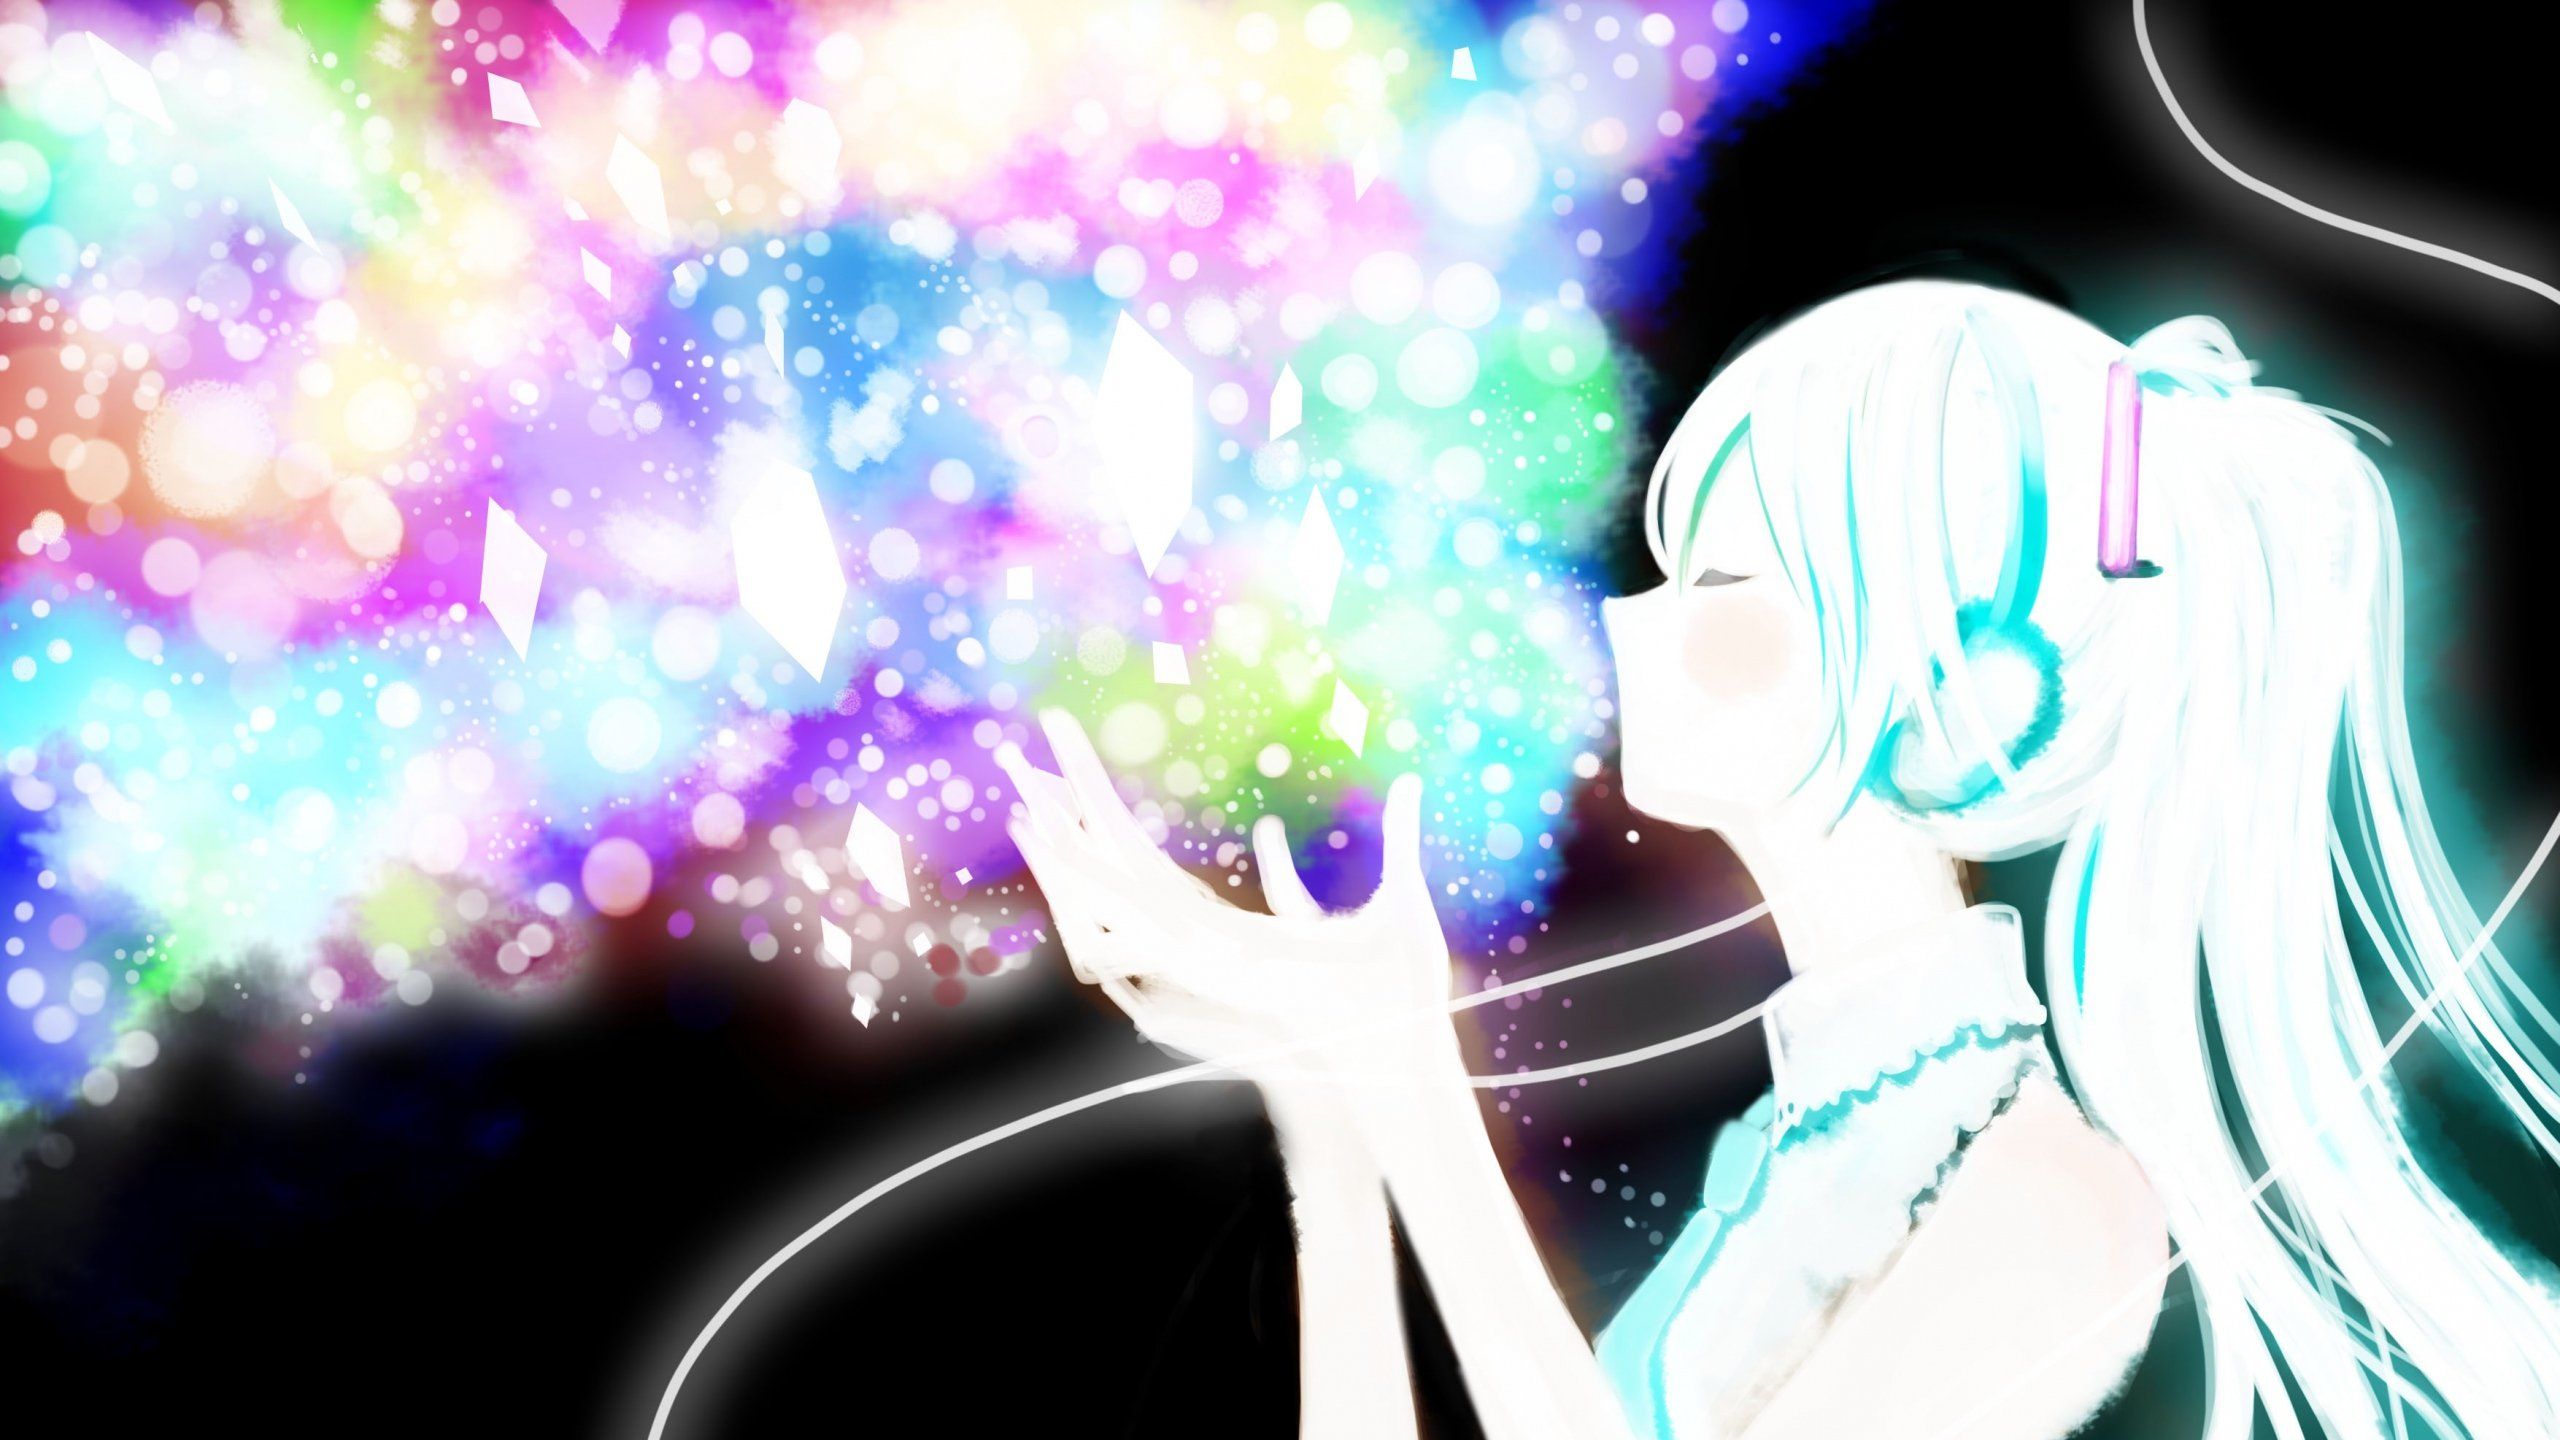 Anime Sparkles PNG Images Transparent Anime Sparkles Image Download   PNGitem